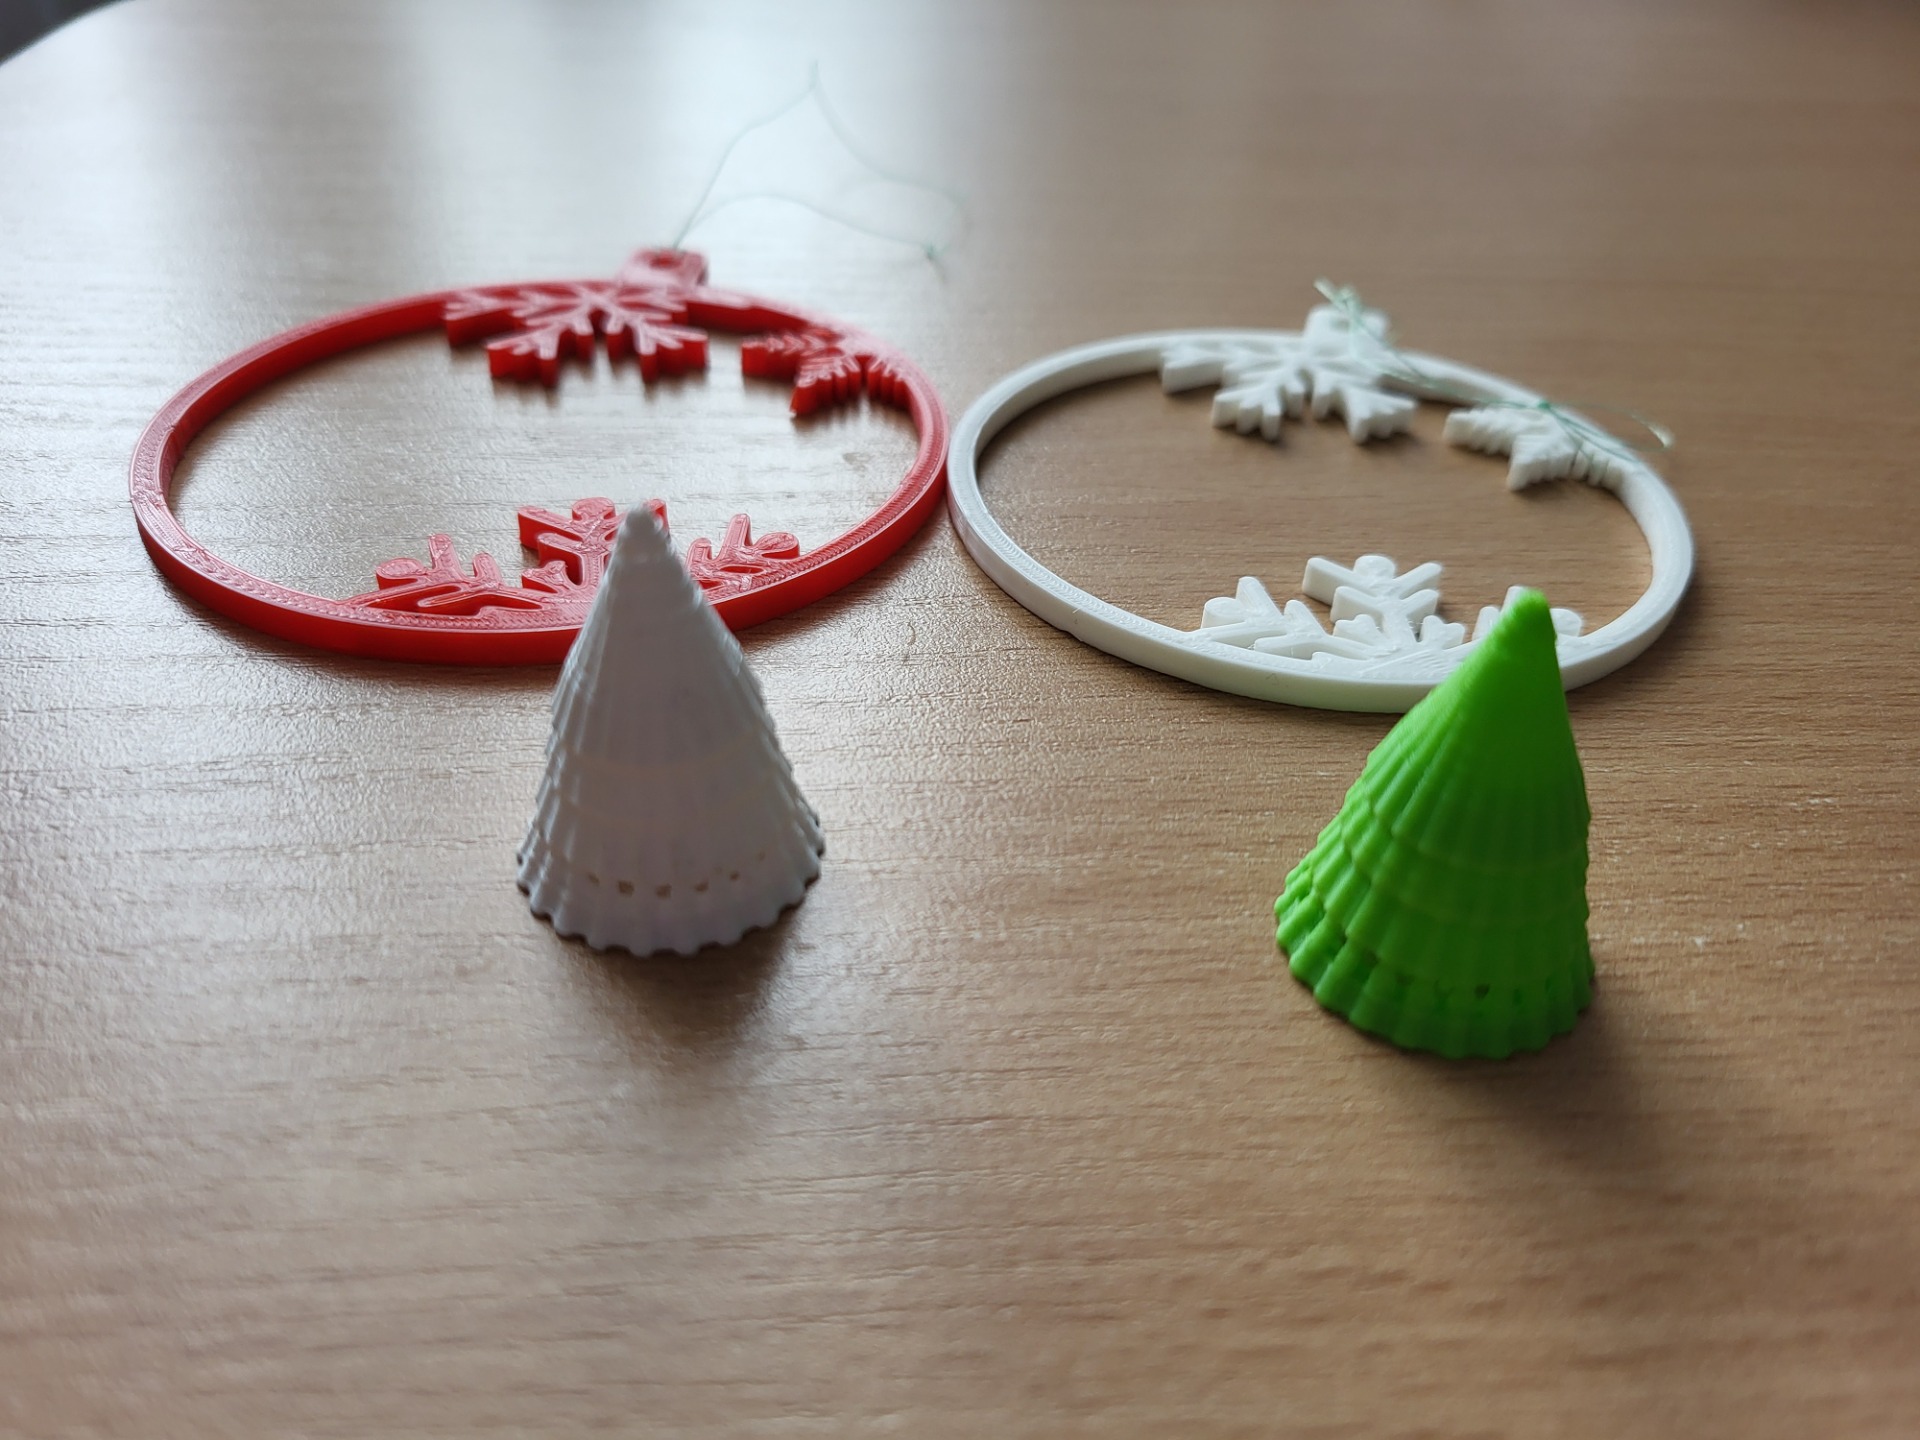 Czerwona i biała bombka oraz zielona i biała choinka wykonane za pomocą drukarki 3D.